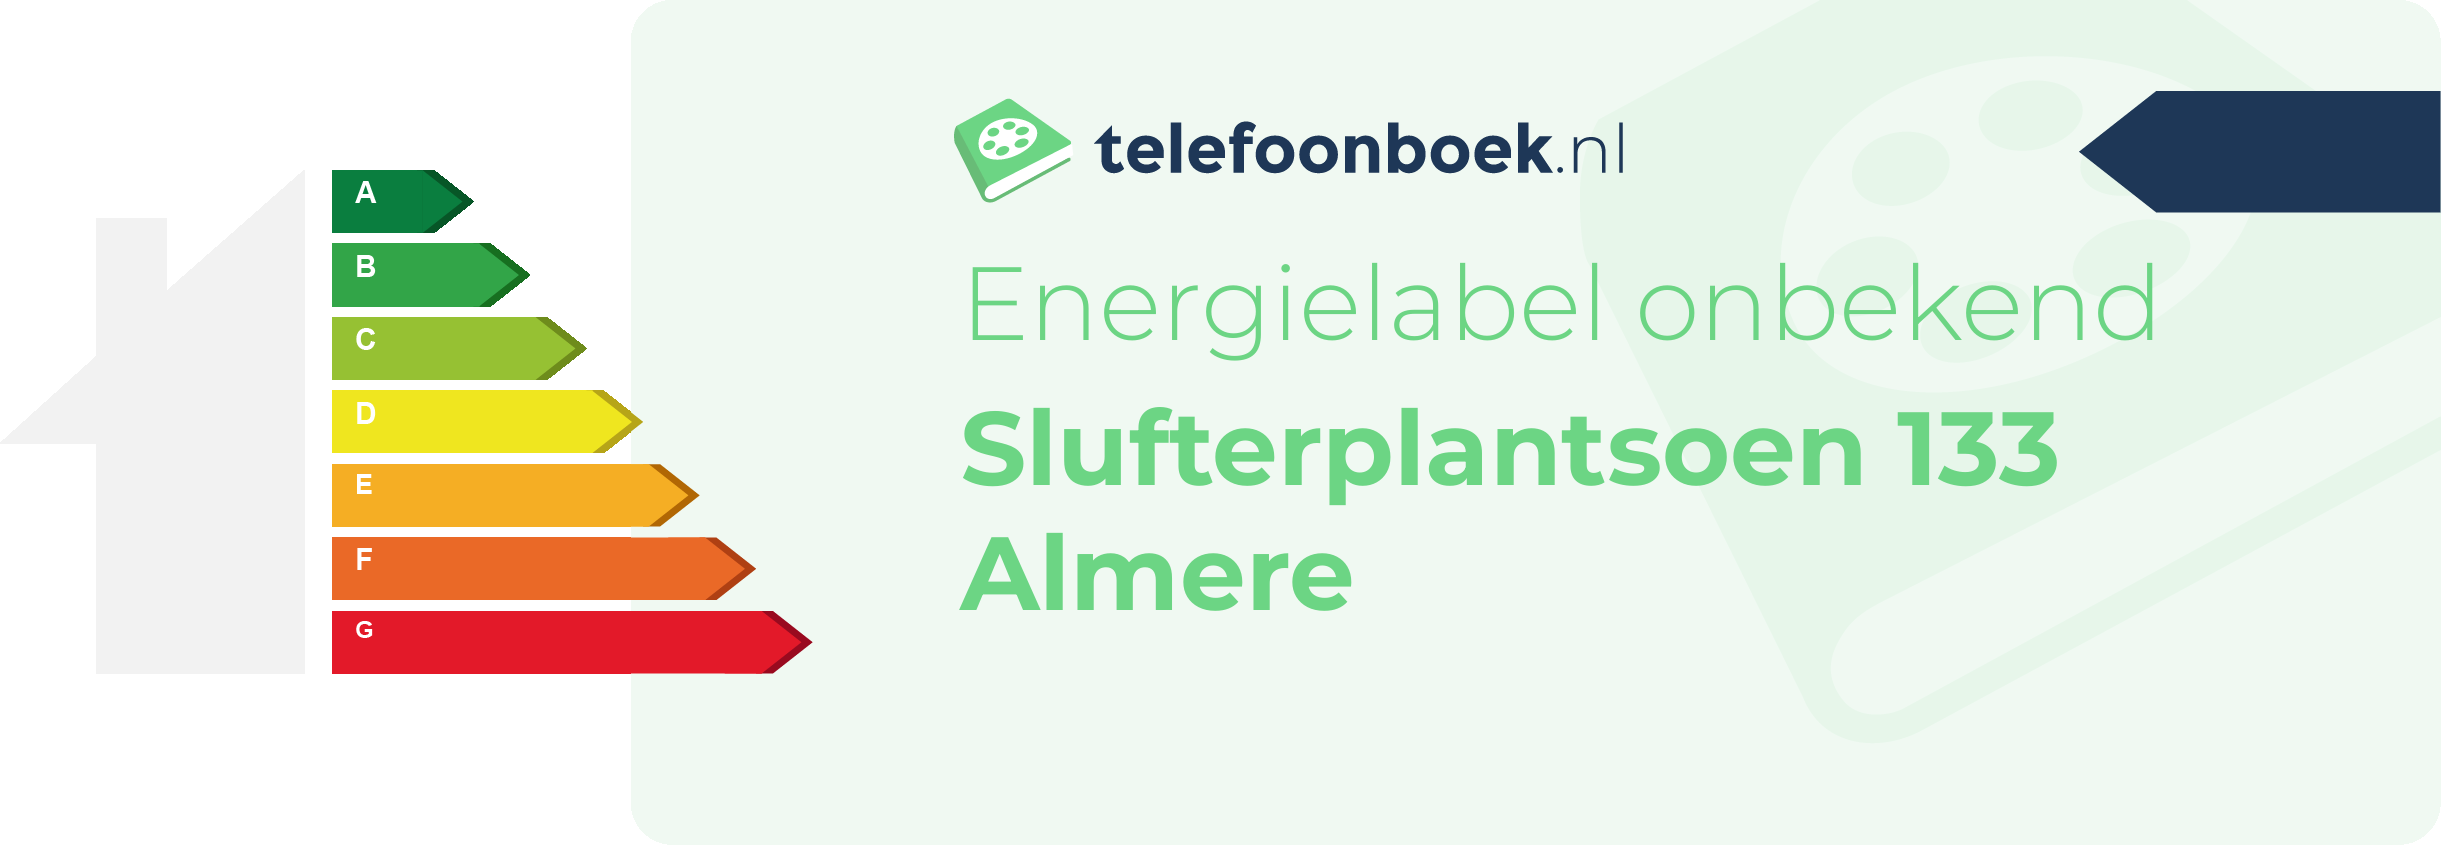 Energielabel Slufterplantsoen 133 Almere